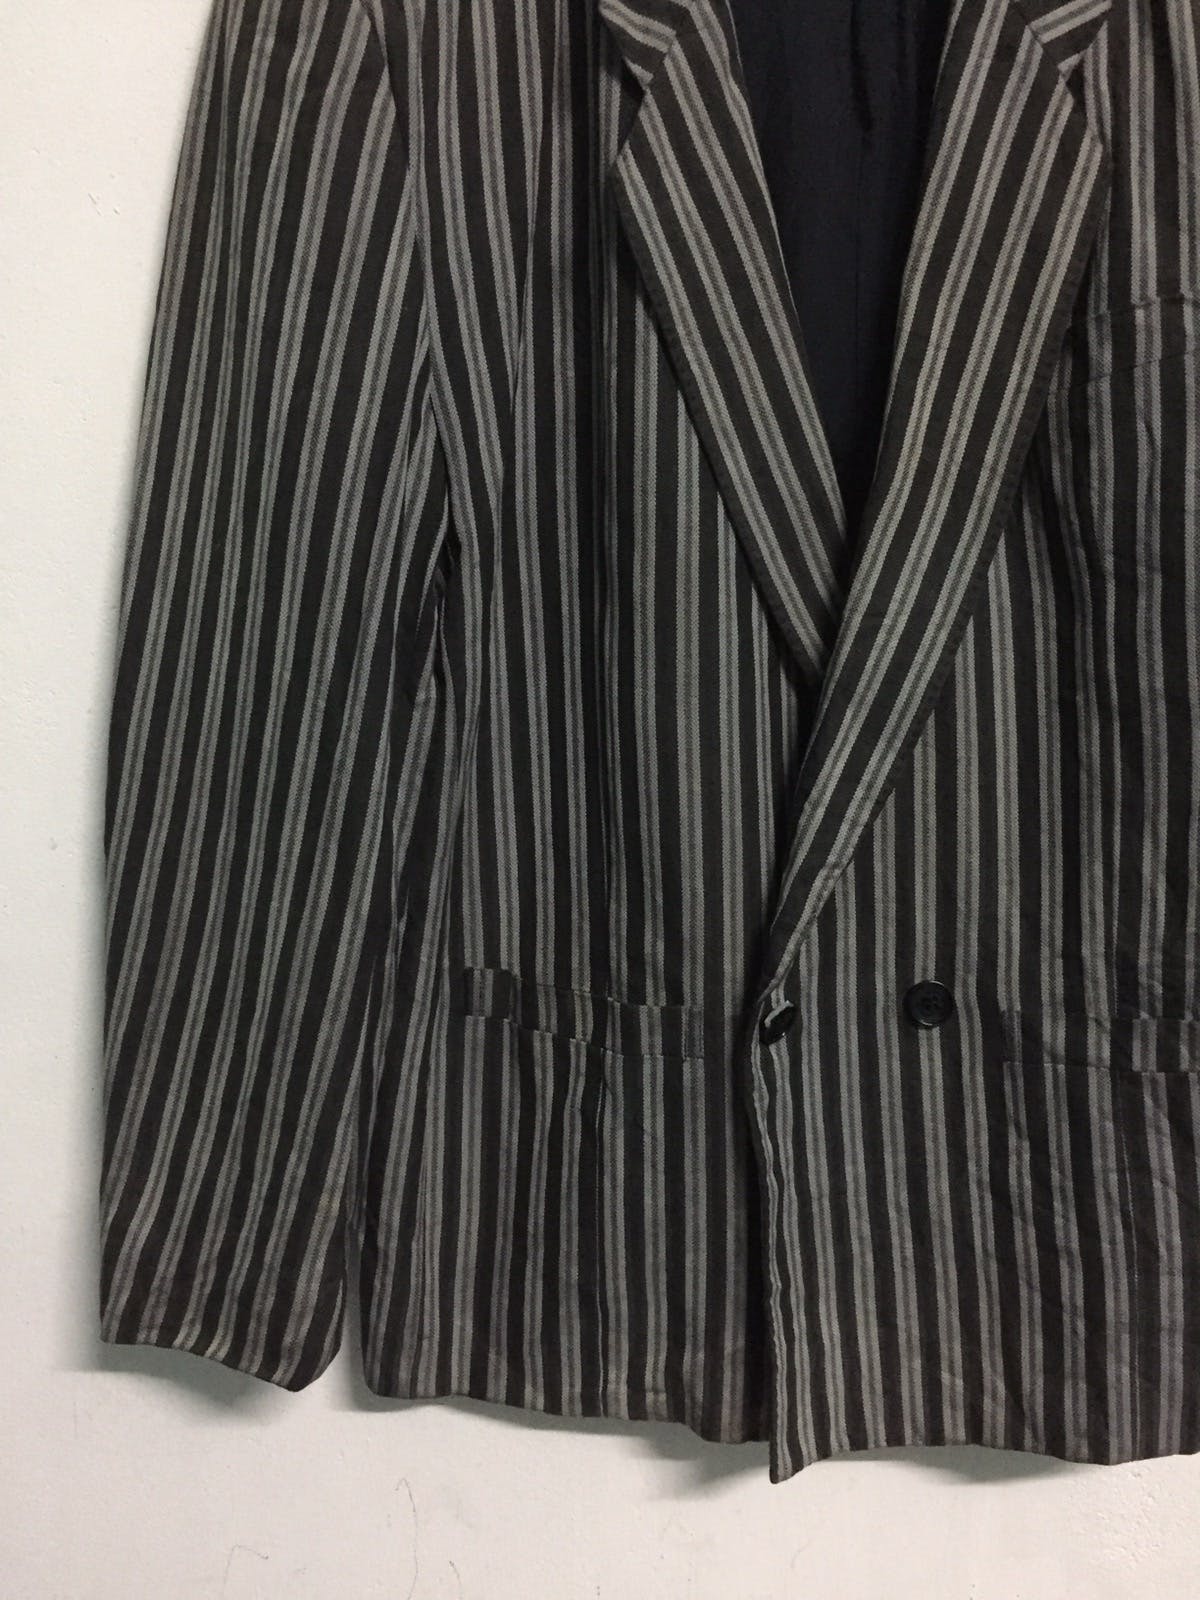 Kenzo Zebra Stripes Jacket Coat Made in Japan - 4